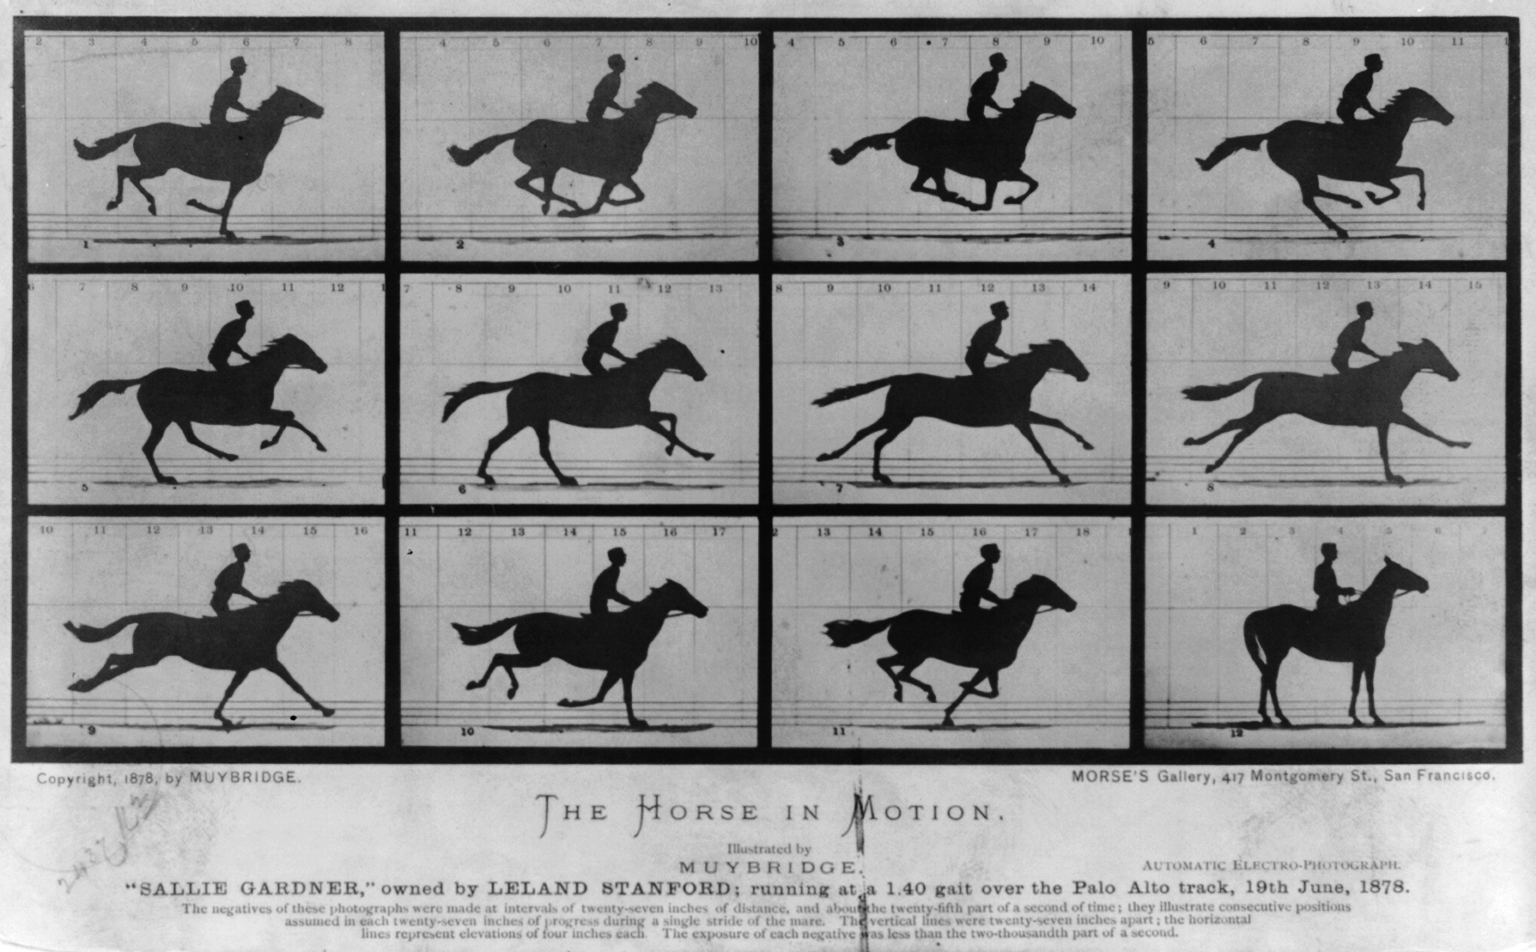 動く馬．リーランド・スタンフォード所有の「サリー・ガードナー」。G・ドムが騎乗し、パロアルト競馬場を1分40秒で走行。1878年6月19日 by Eadweard Muybridge - 1878年 - - 